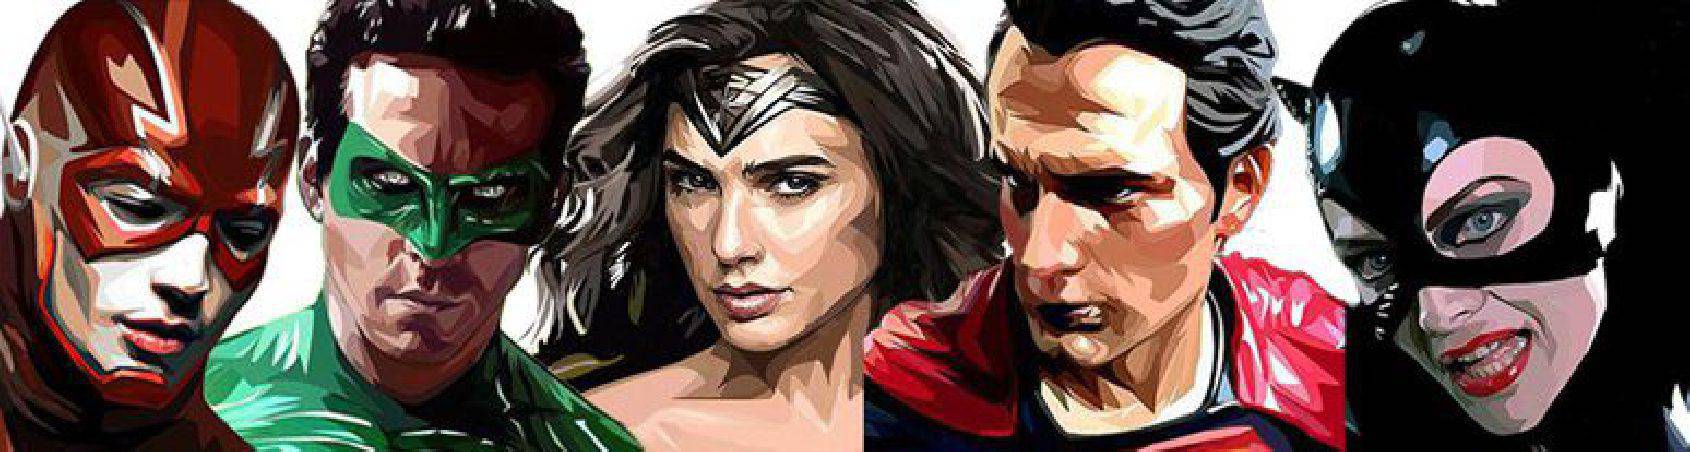 quadres estil PopArt - personatges DC comics: Superman, Wonderwoman...